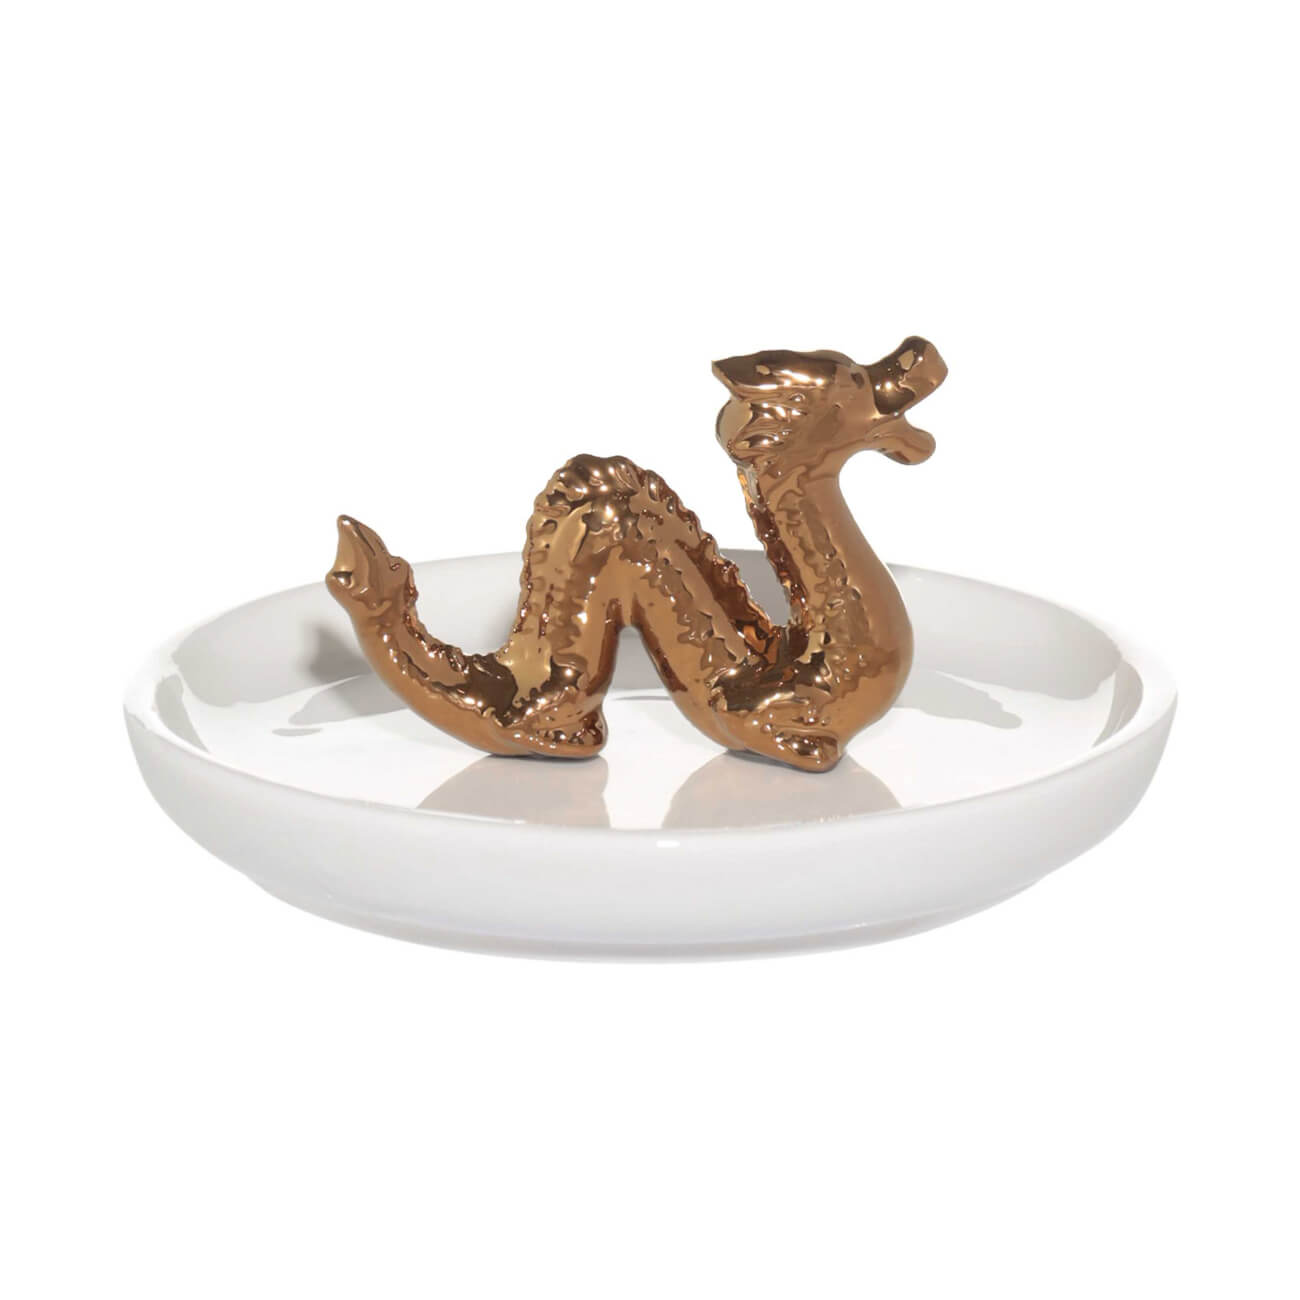 Держатель для украшений, 13х2 см, керамика, белый, Золотистый дракон, Dragon dayron